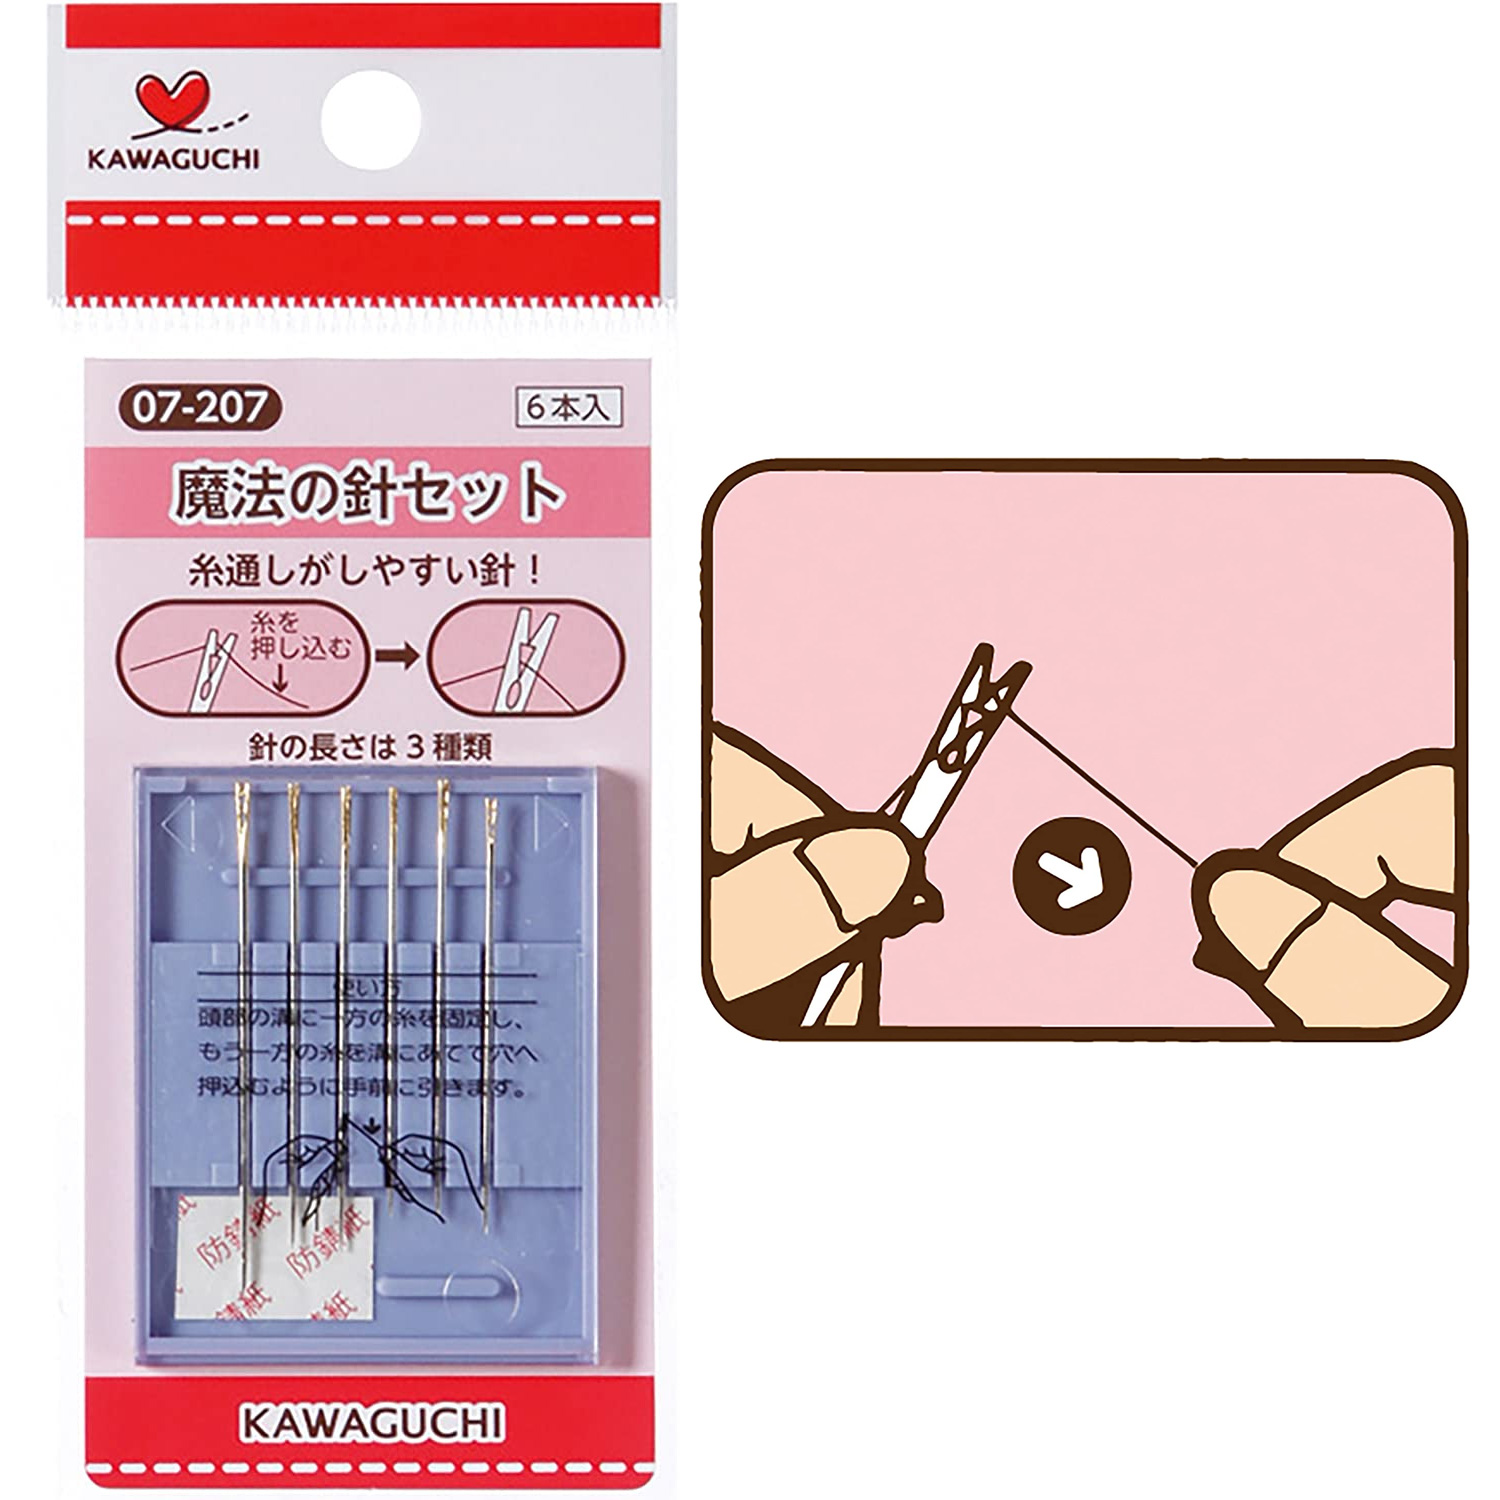 TK07207 KAWAGUCHI 縫い針 魔法の針セット (個)